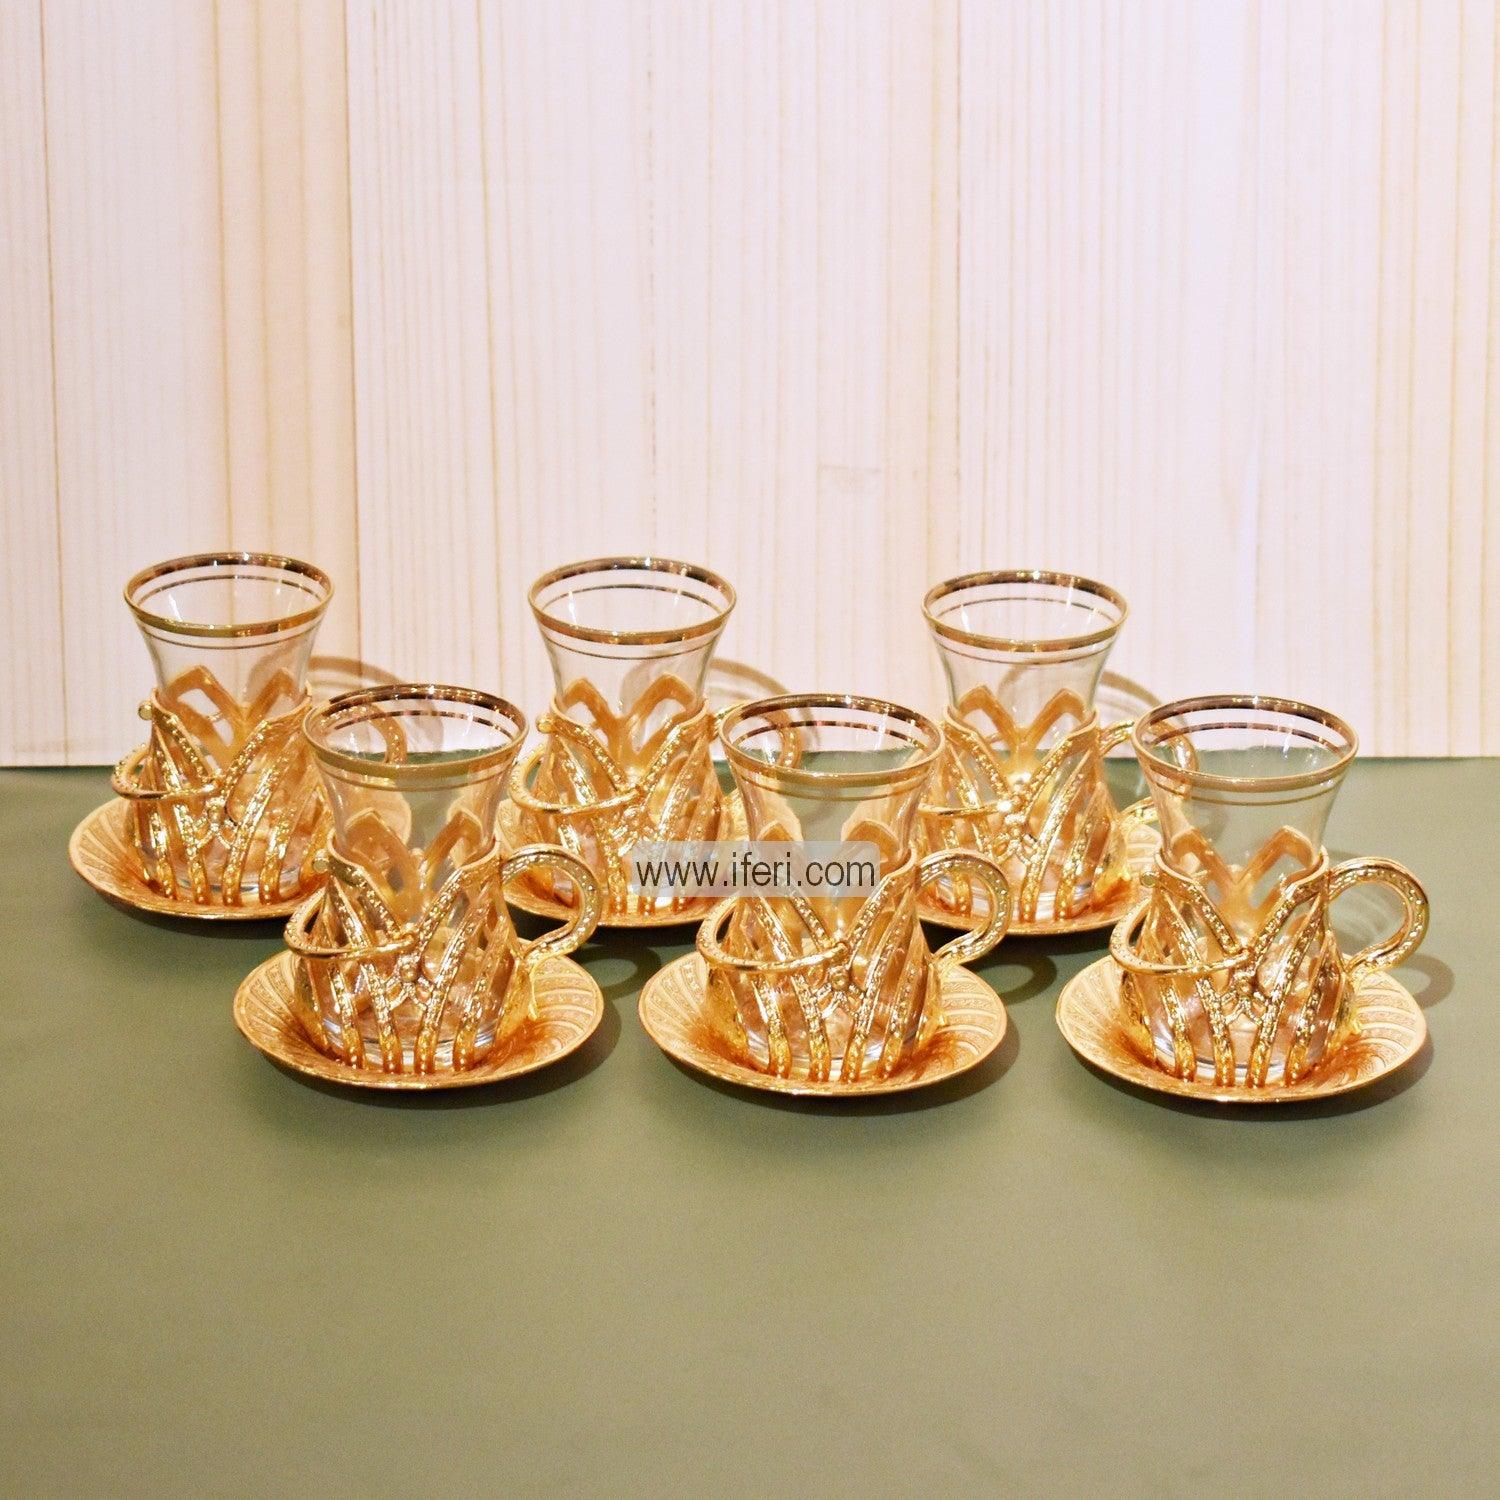 12 Pcs Exclusive Glass & Metal Turkish Tea Cup & Saucer Set GA2004 Price in Bangladesh - iferi.com